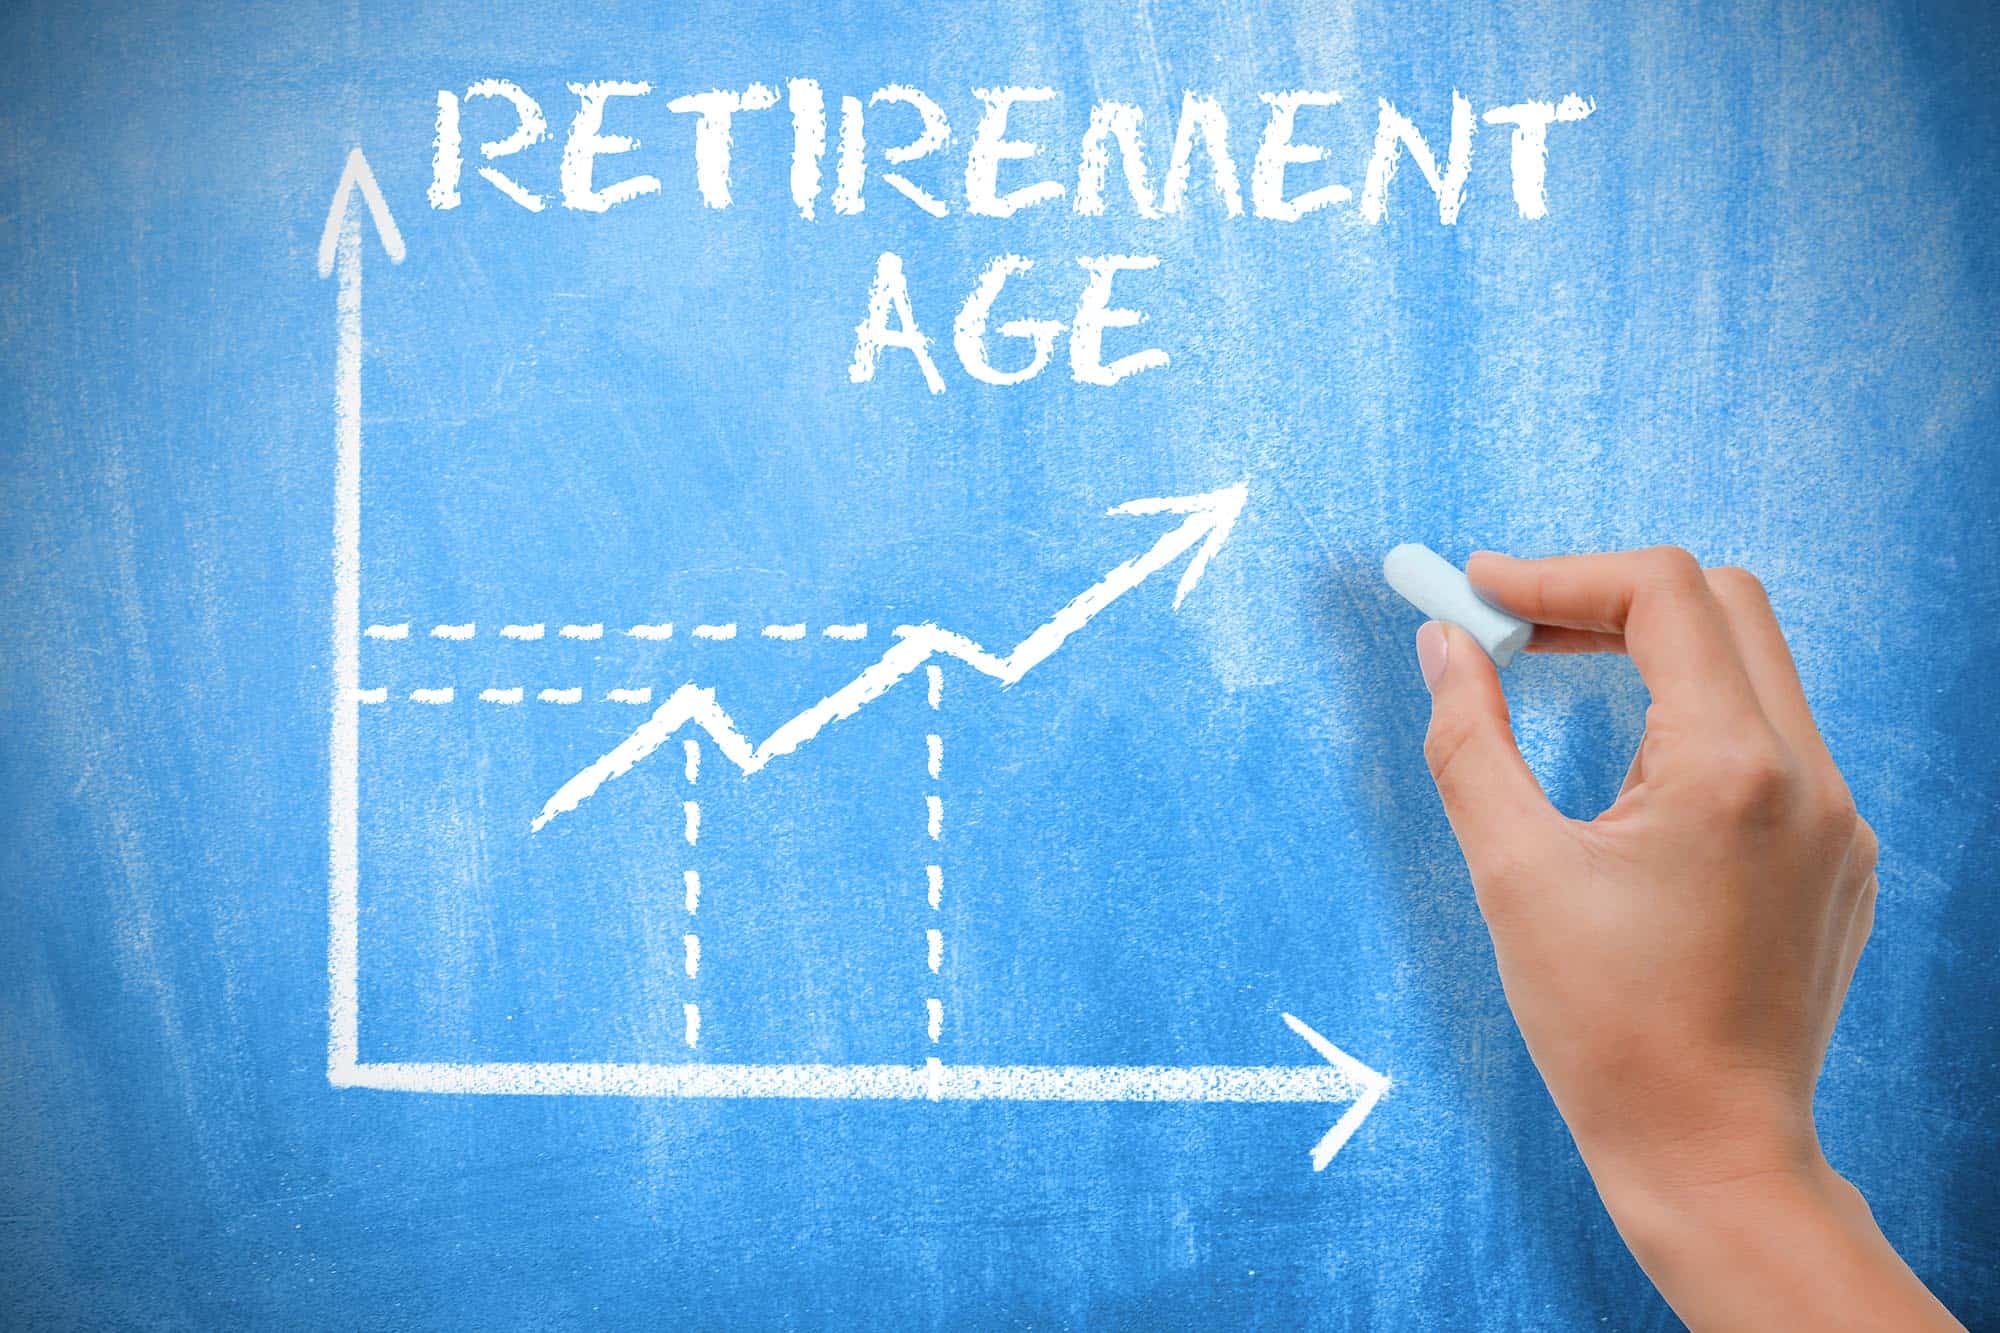 Centaurus lite retirement benefit scheme